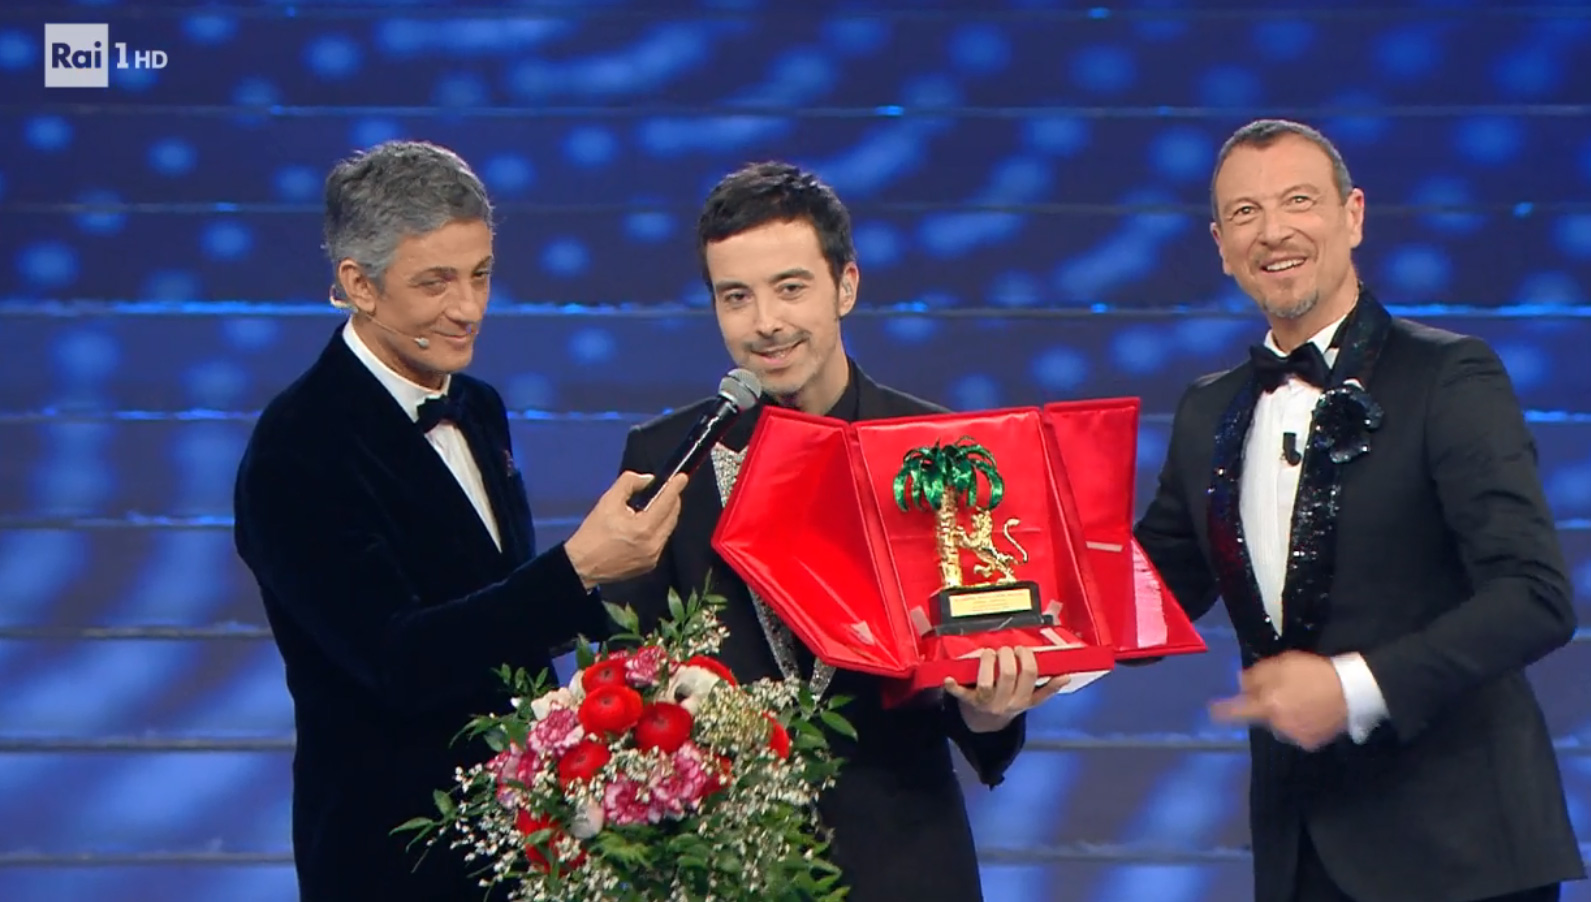 Diodato vincitore di Sanremo 2020